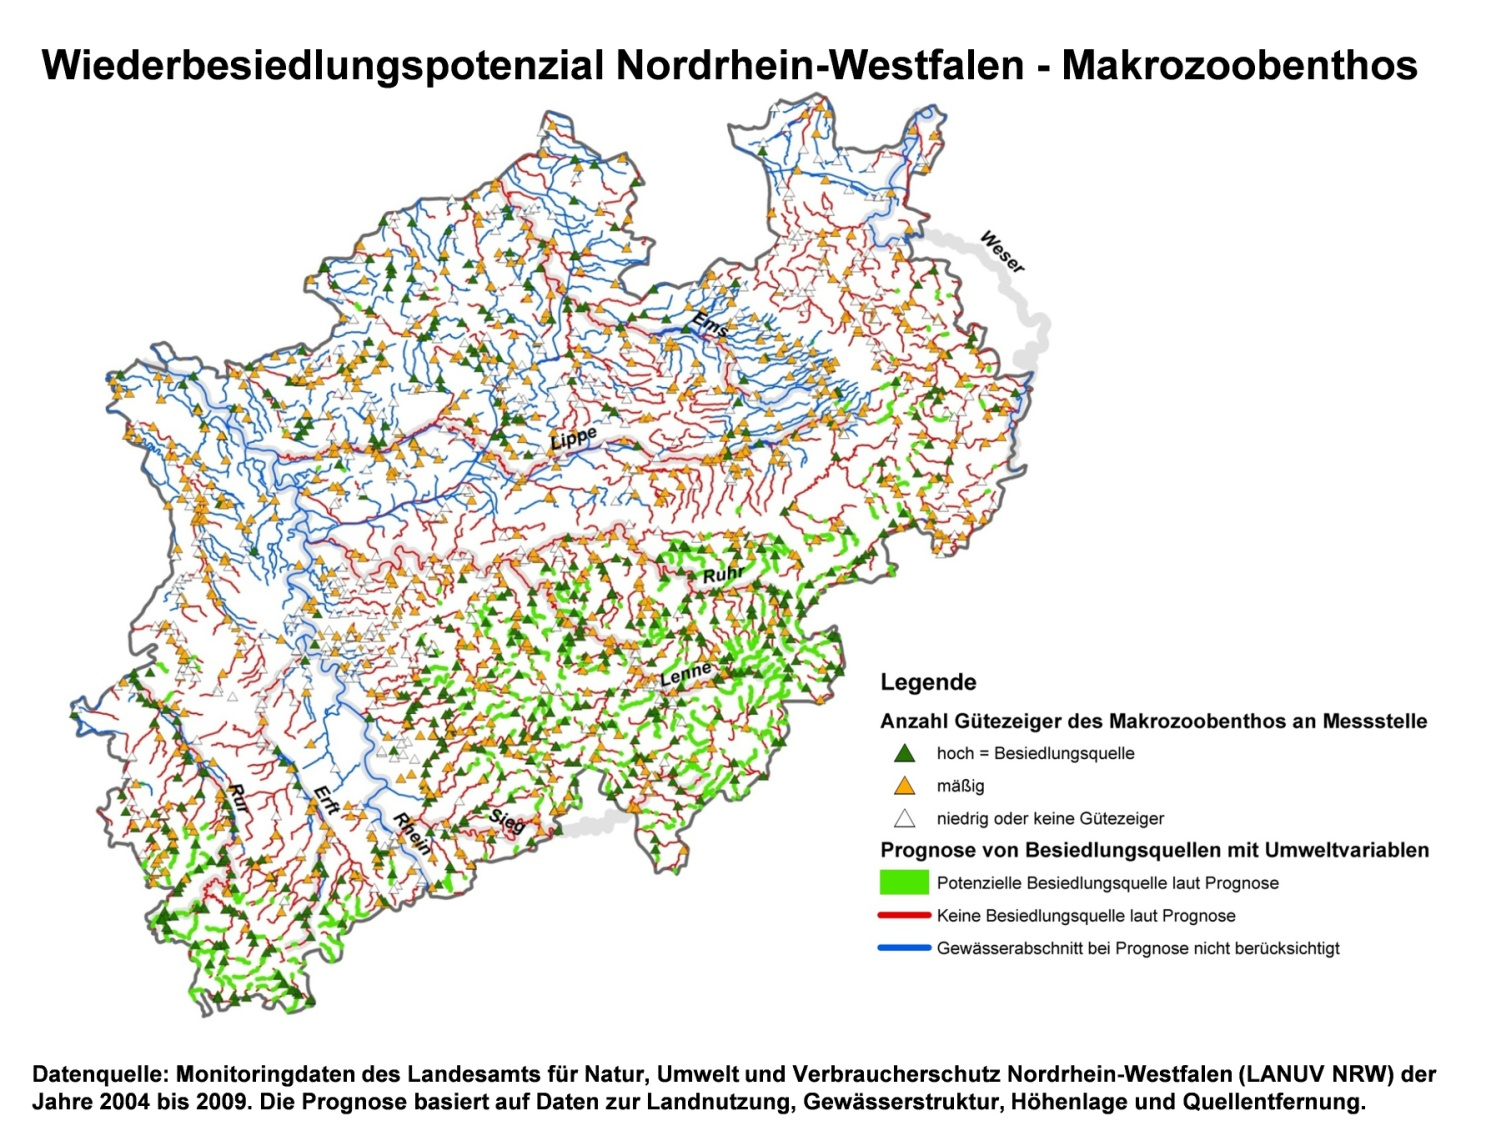 Abbildung 7.2: Wiederbesiedlungspotenzial des Makrozoobenthos in Nordrhein-Westfalen.